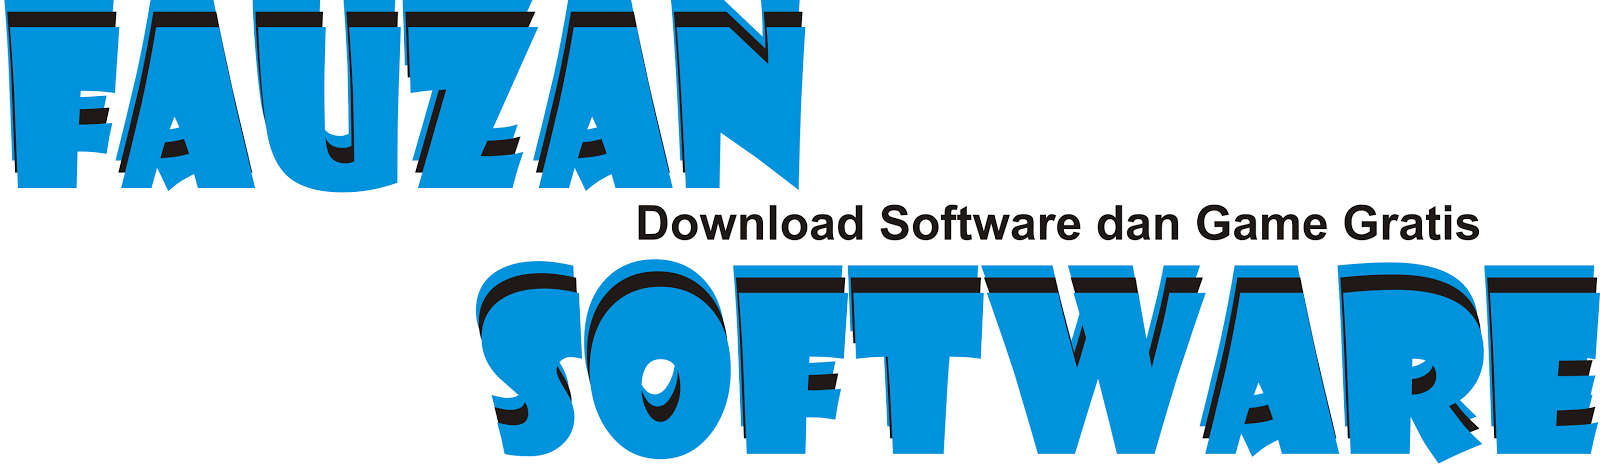 Download Game dan Software Full Version